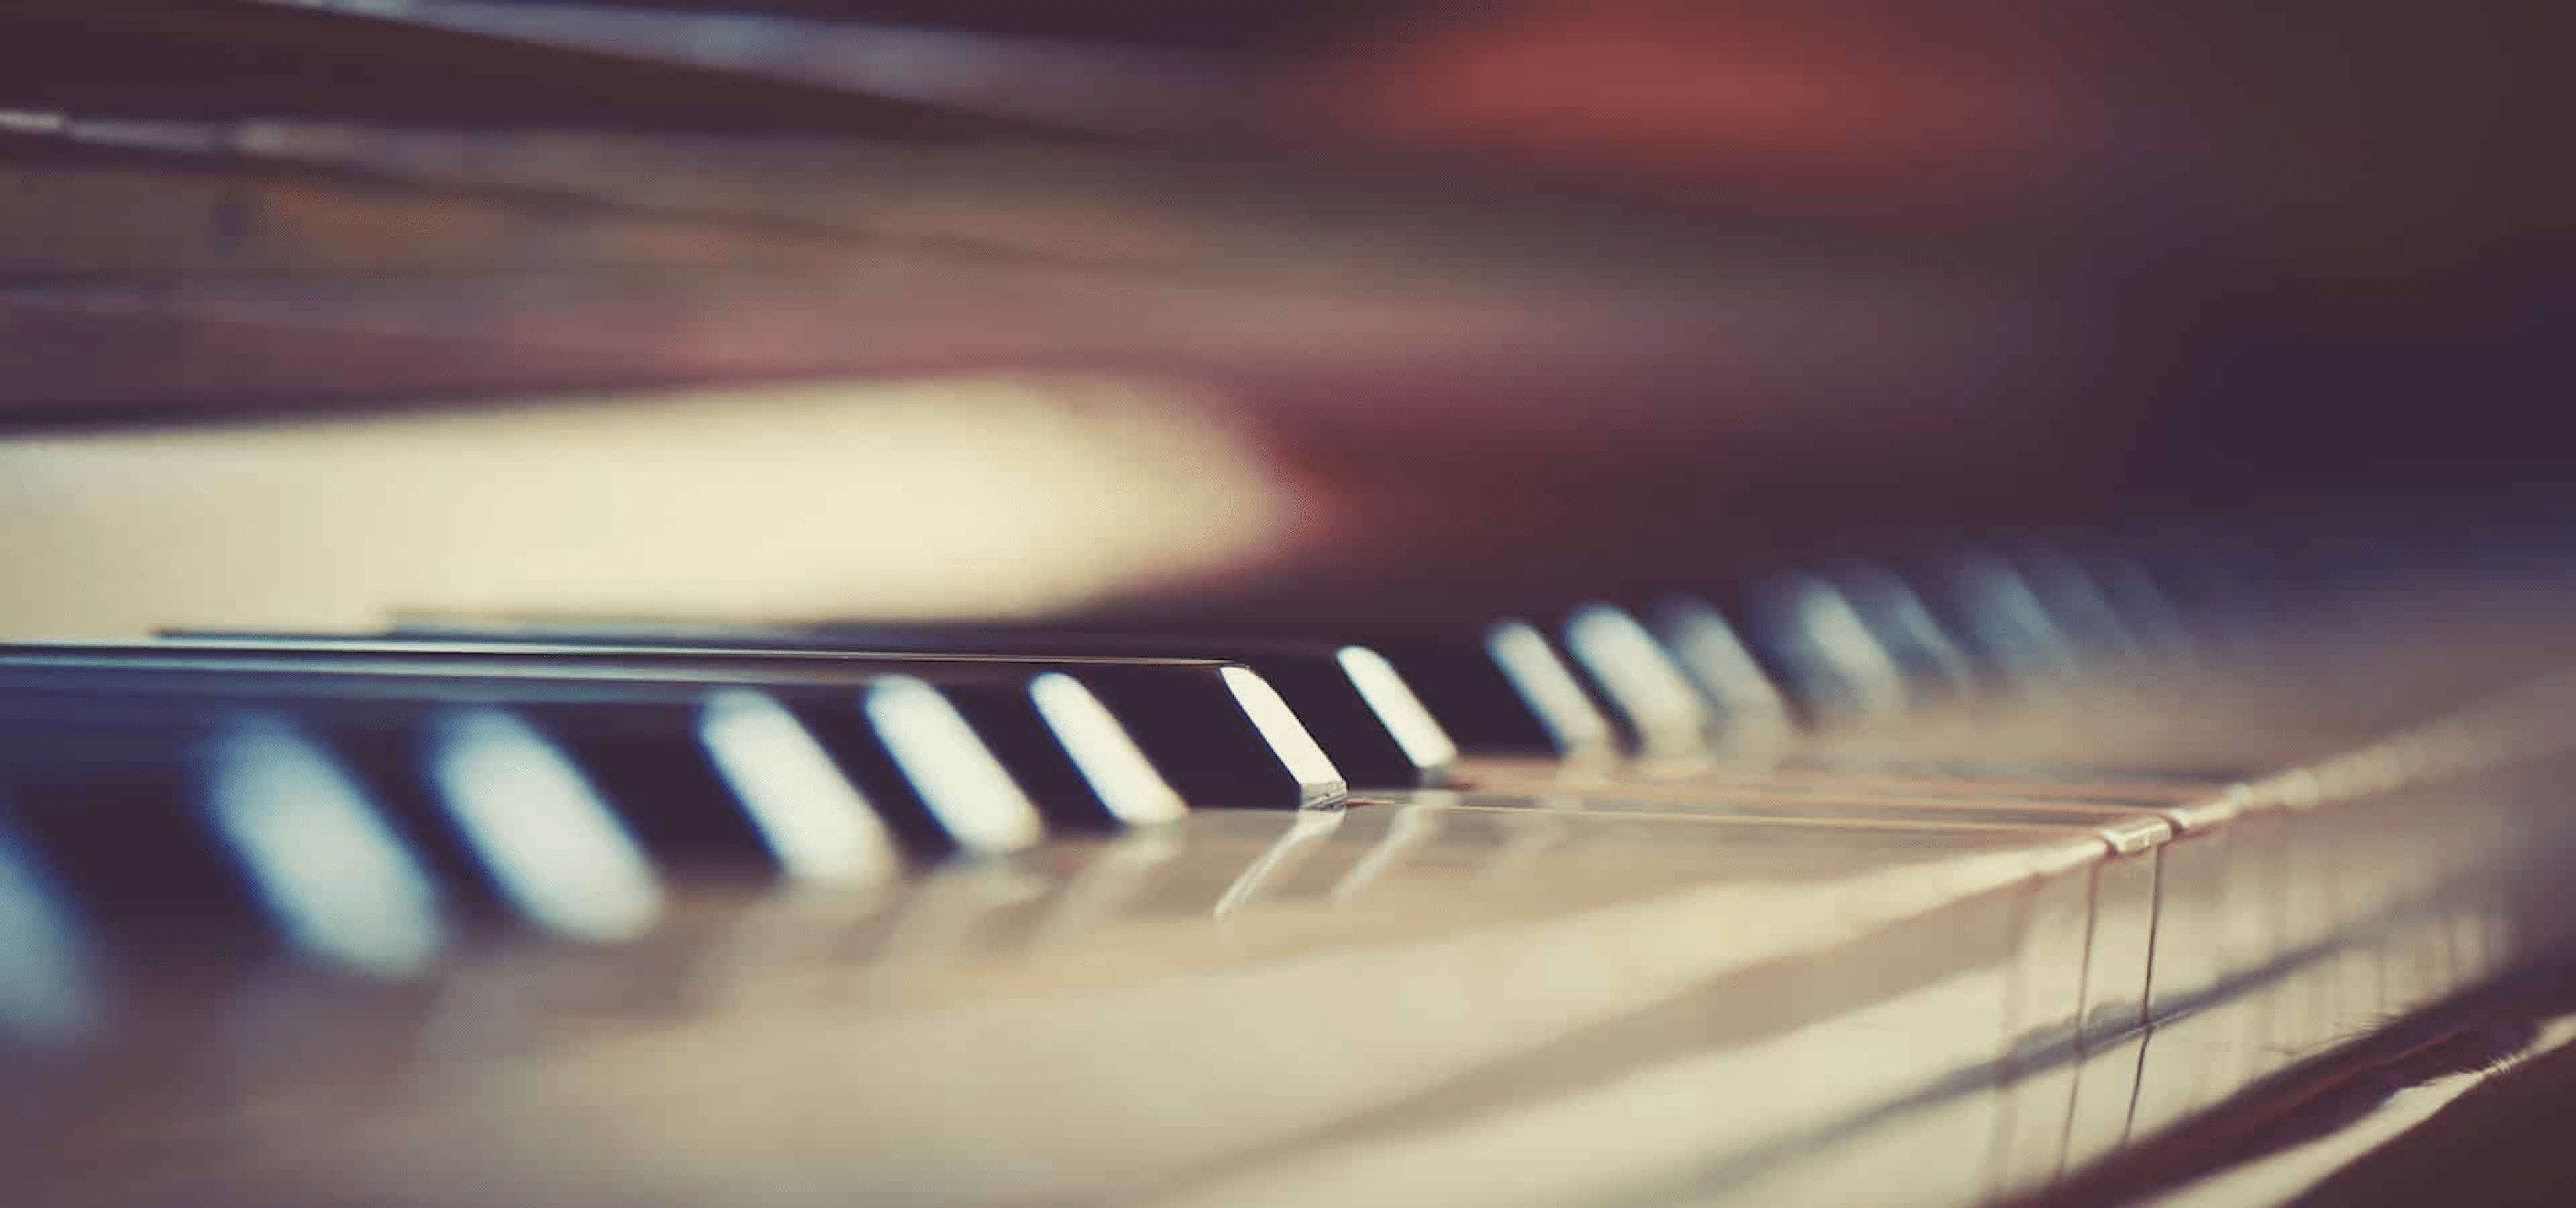 ピアノ鍵盤のアップ